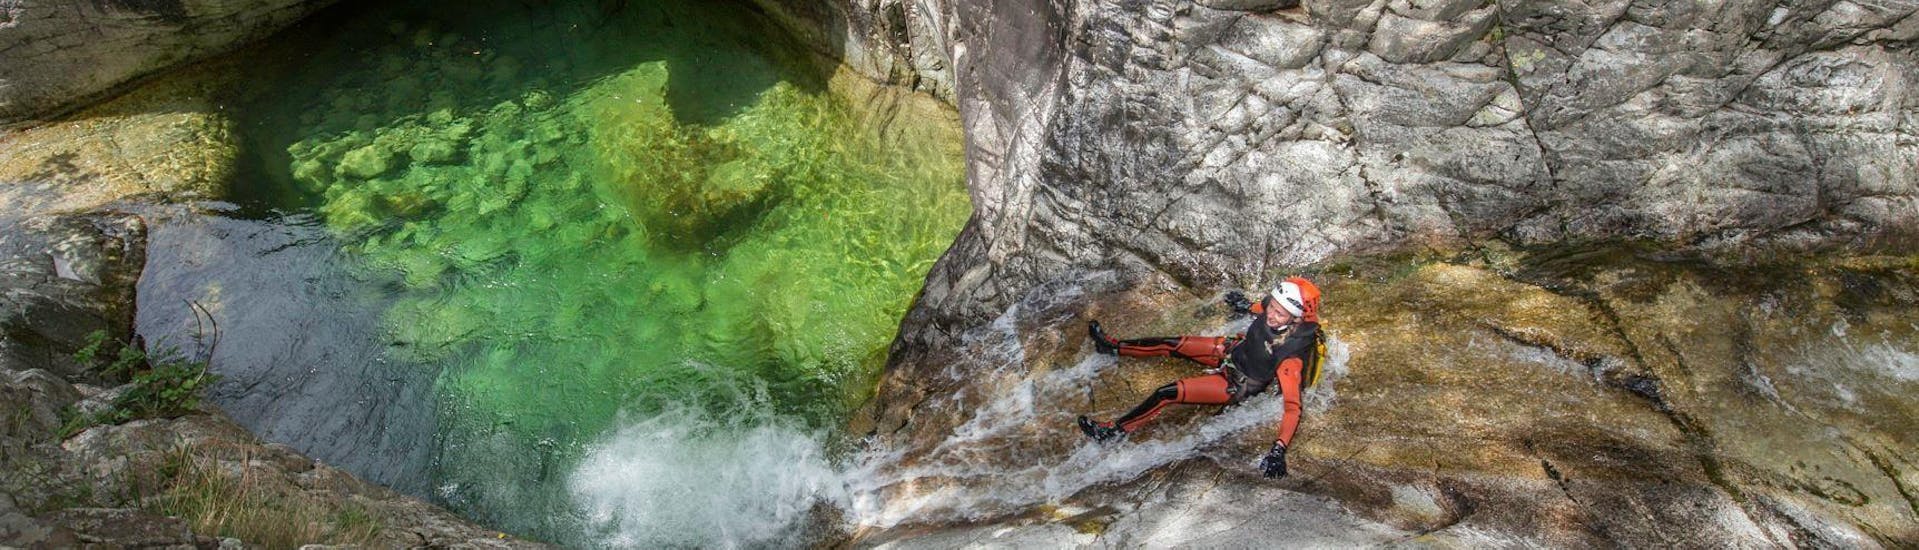 Una niña se desliza en el cañón de Zoicu durante la actividad de barranquismo con su instructor de Canyon Corse.